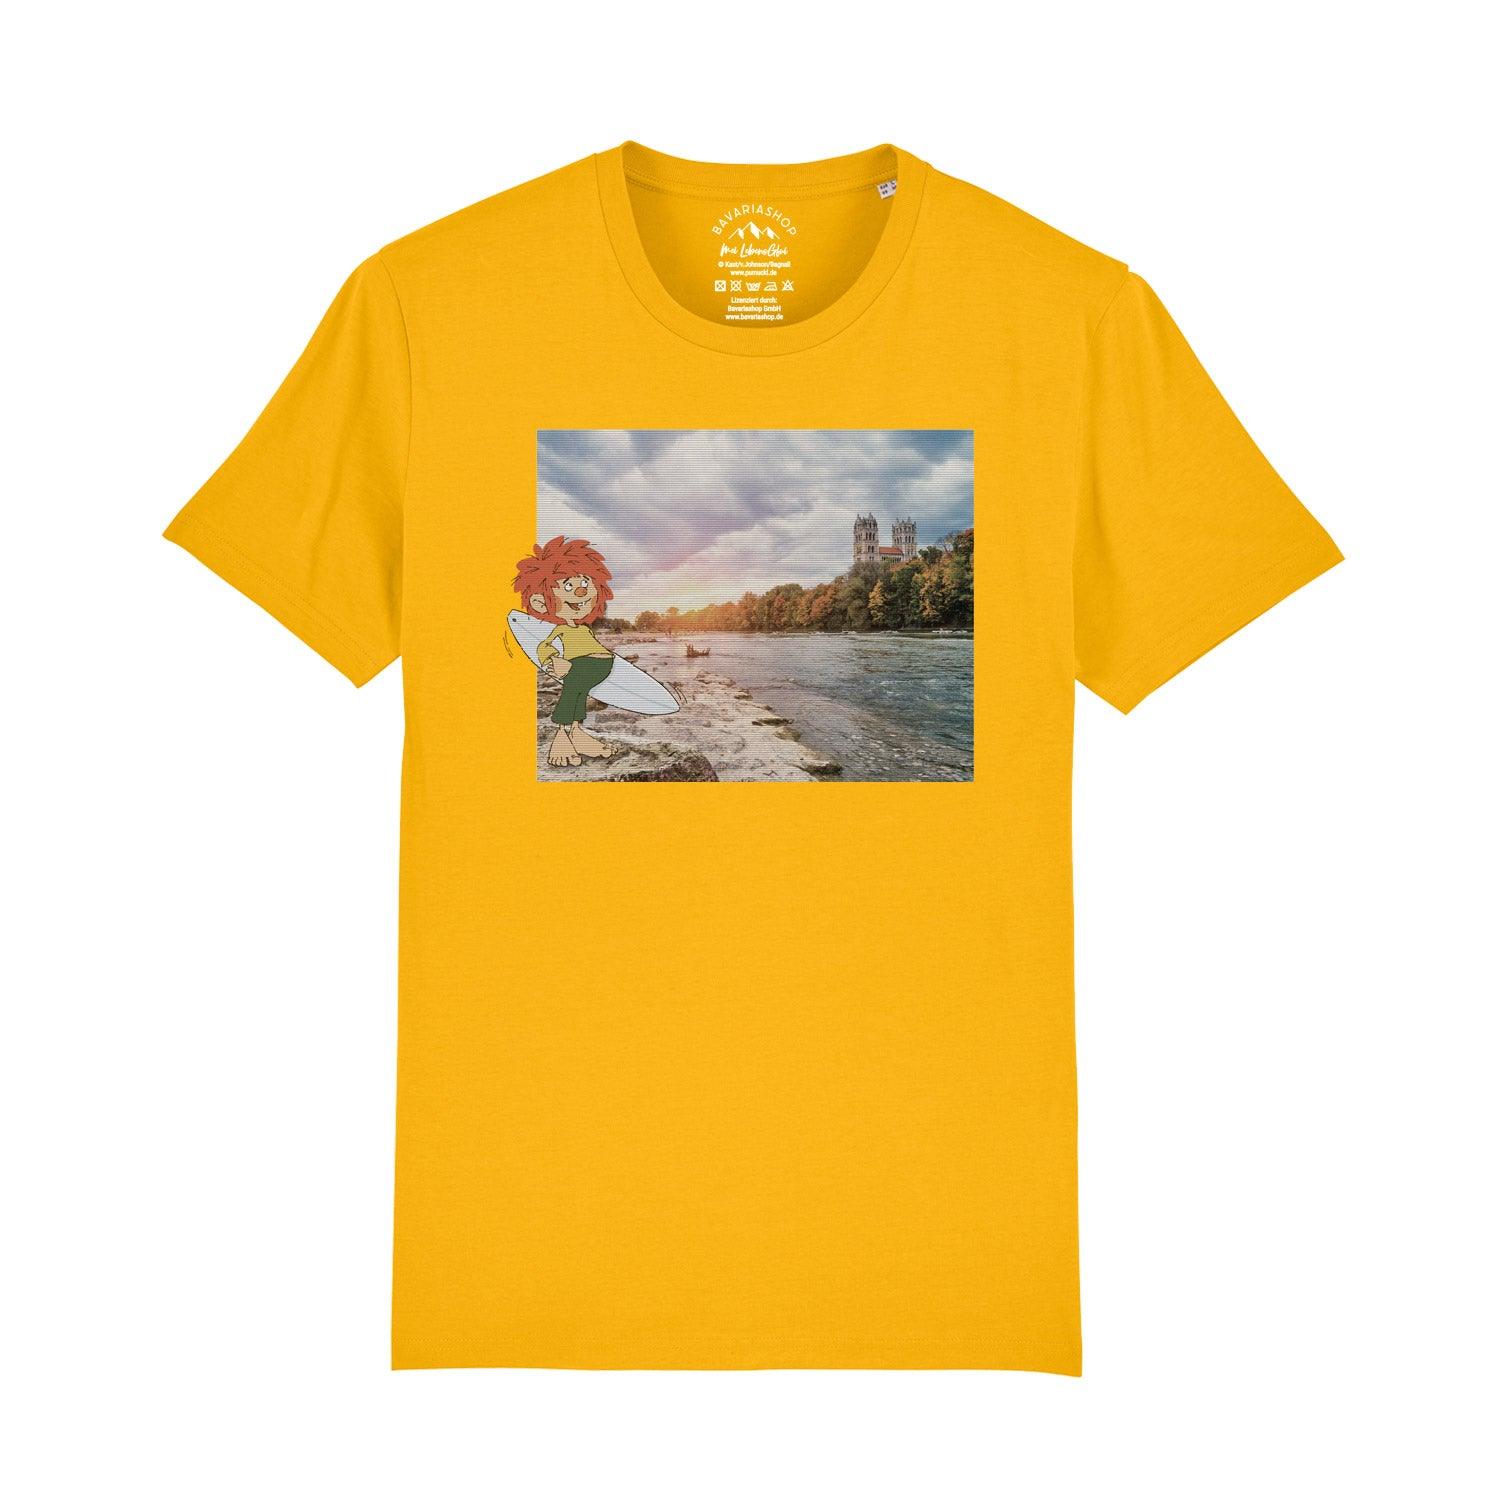 ®Pumuckl Herren T-Shirt "Surfer-Kobold" - bavariashop - mei LebensGfui